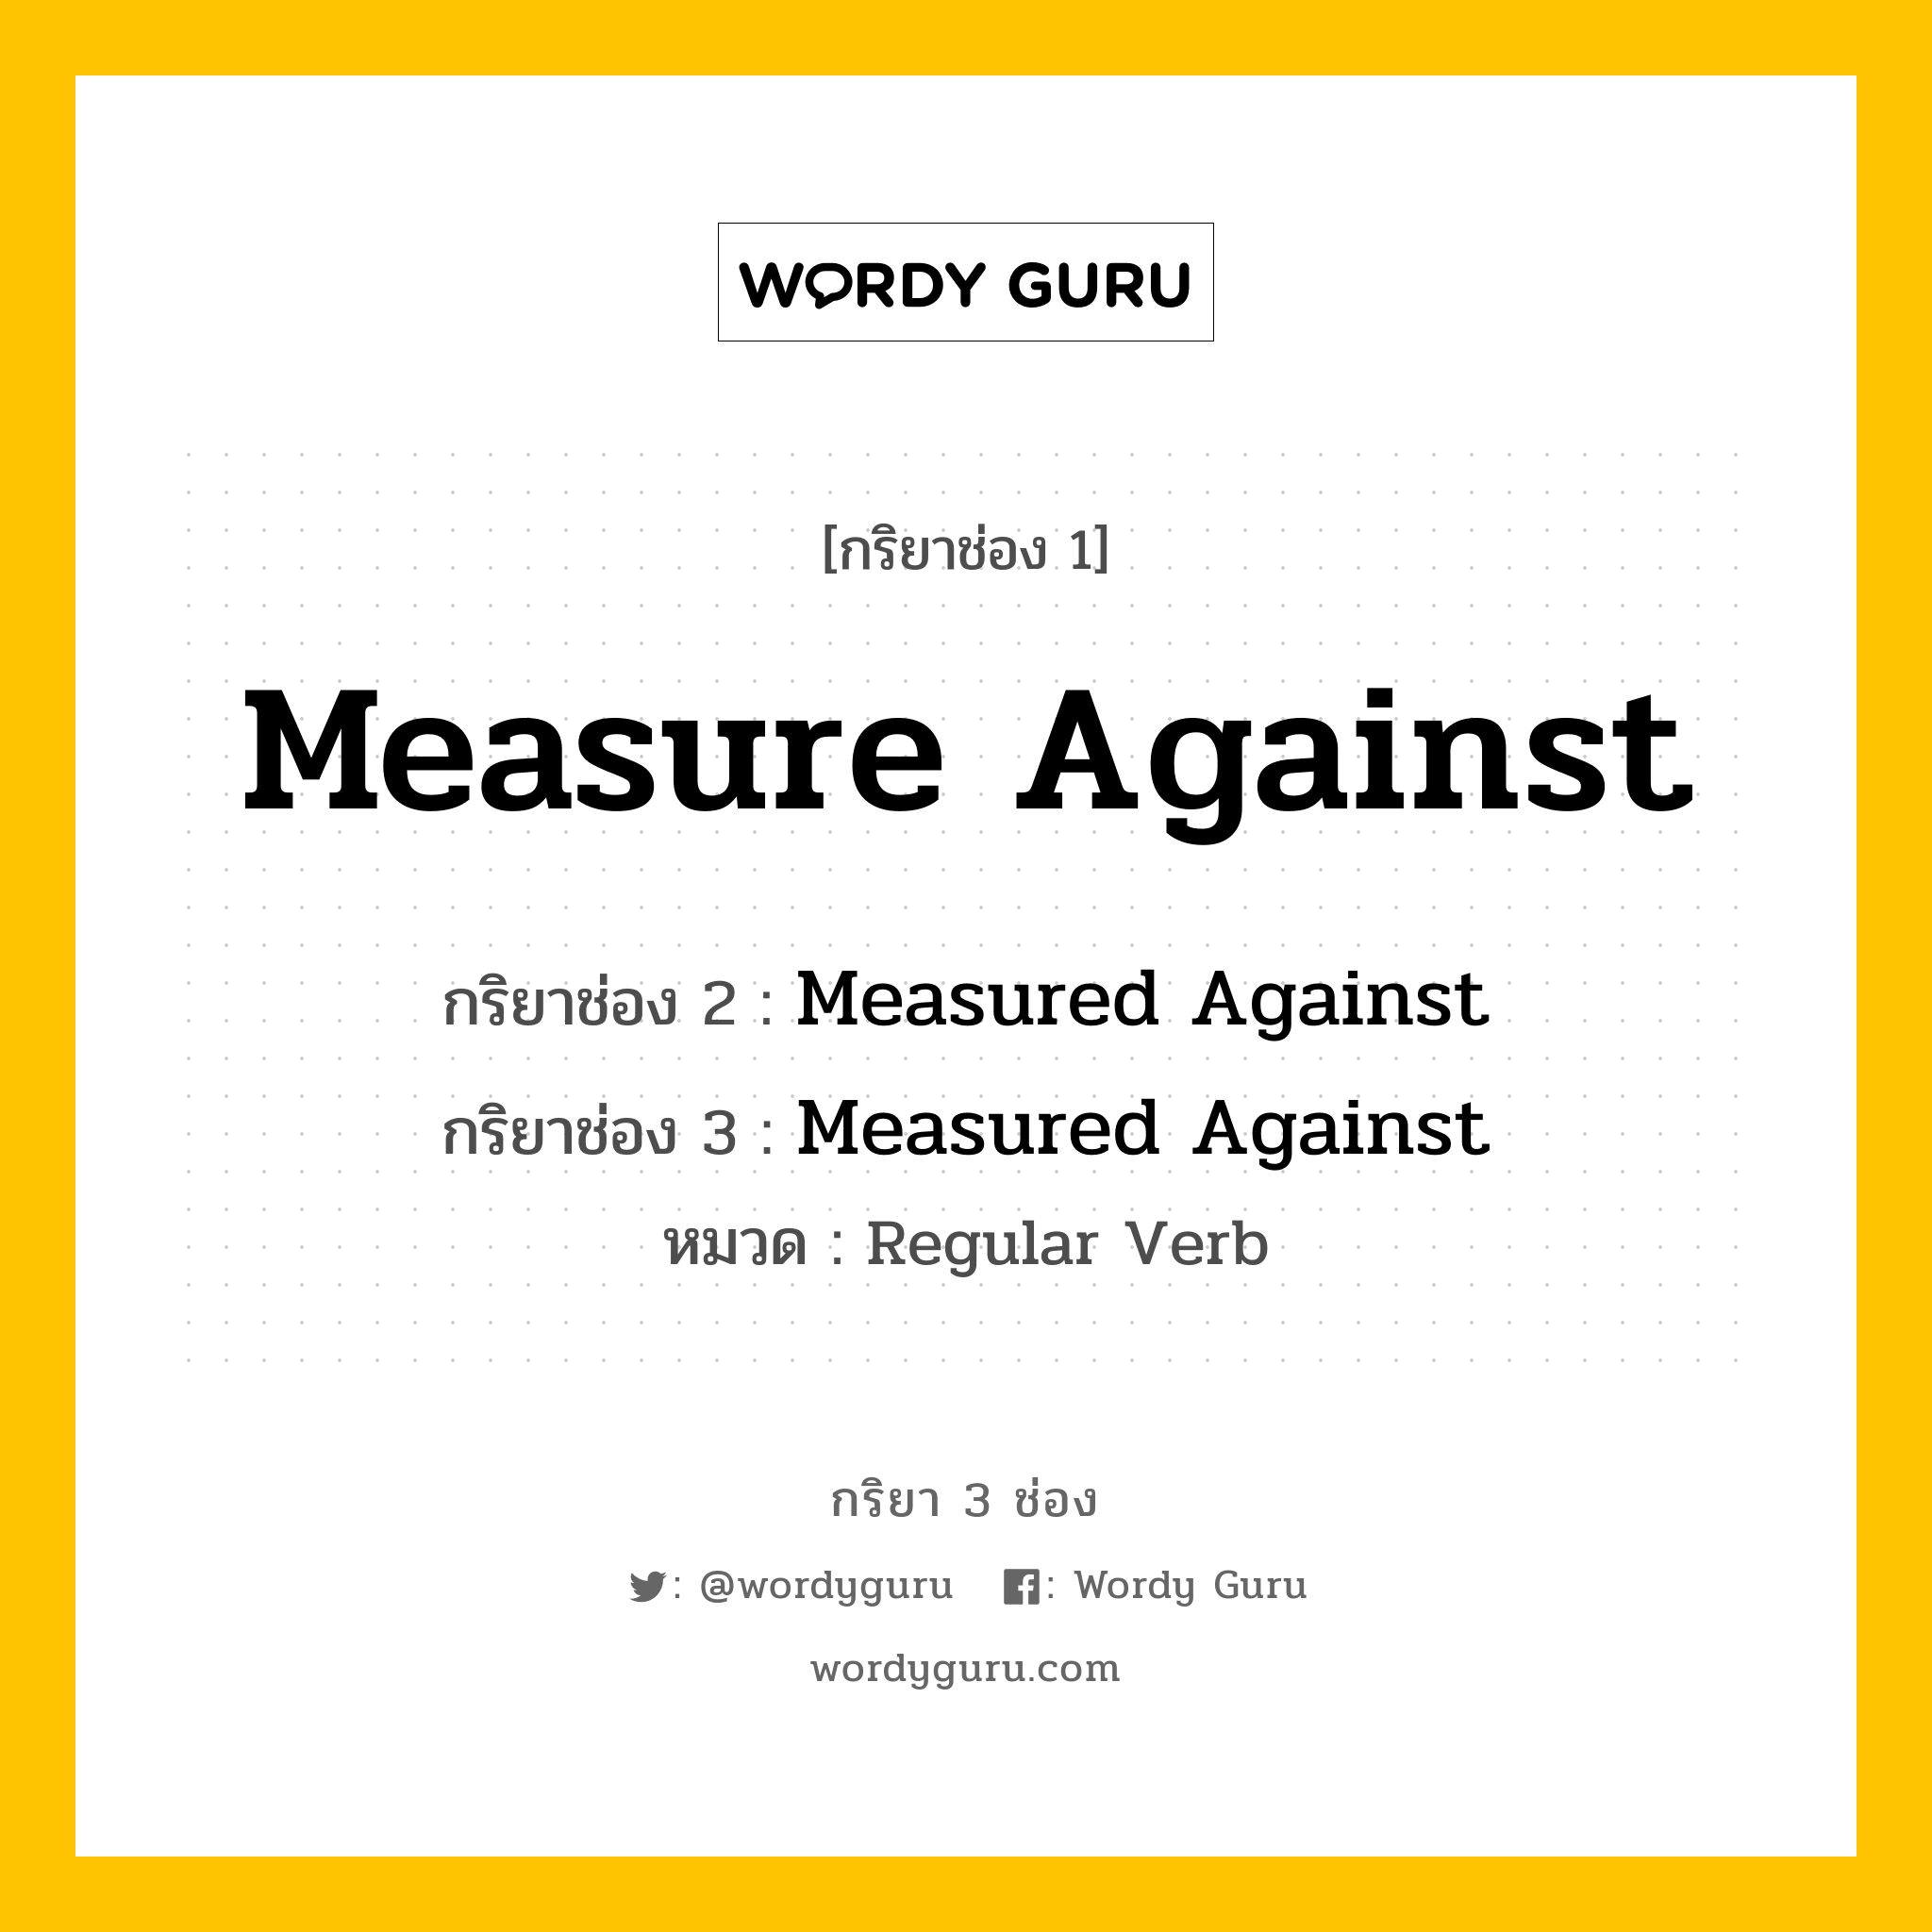 กริยา 3 ช่อง: Measure Against ช่อง 2 Measure Against ช่อง 3 คืออะไร, กริยาช่อง 1 Measure Against กริยาช่อง 2 Measured Against กริยาช่อง 3 Measured Against หมวด Regular Verb หมวด Regular Verb